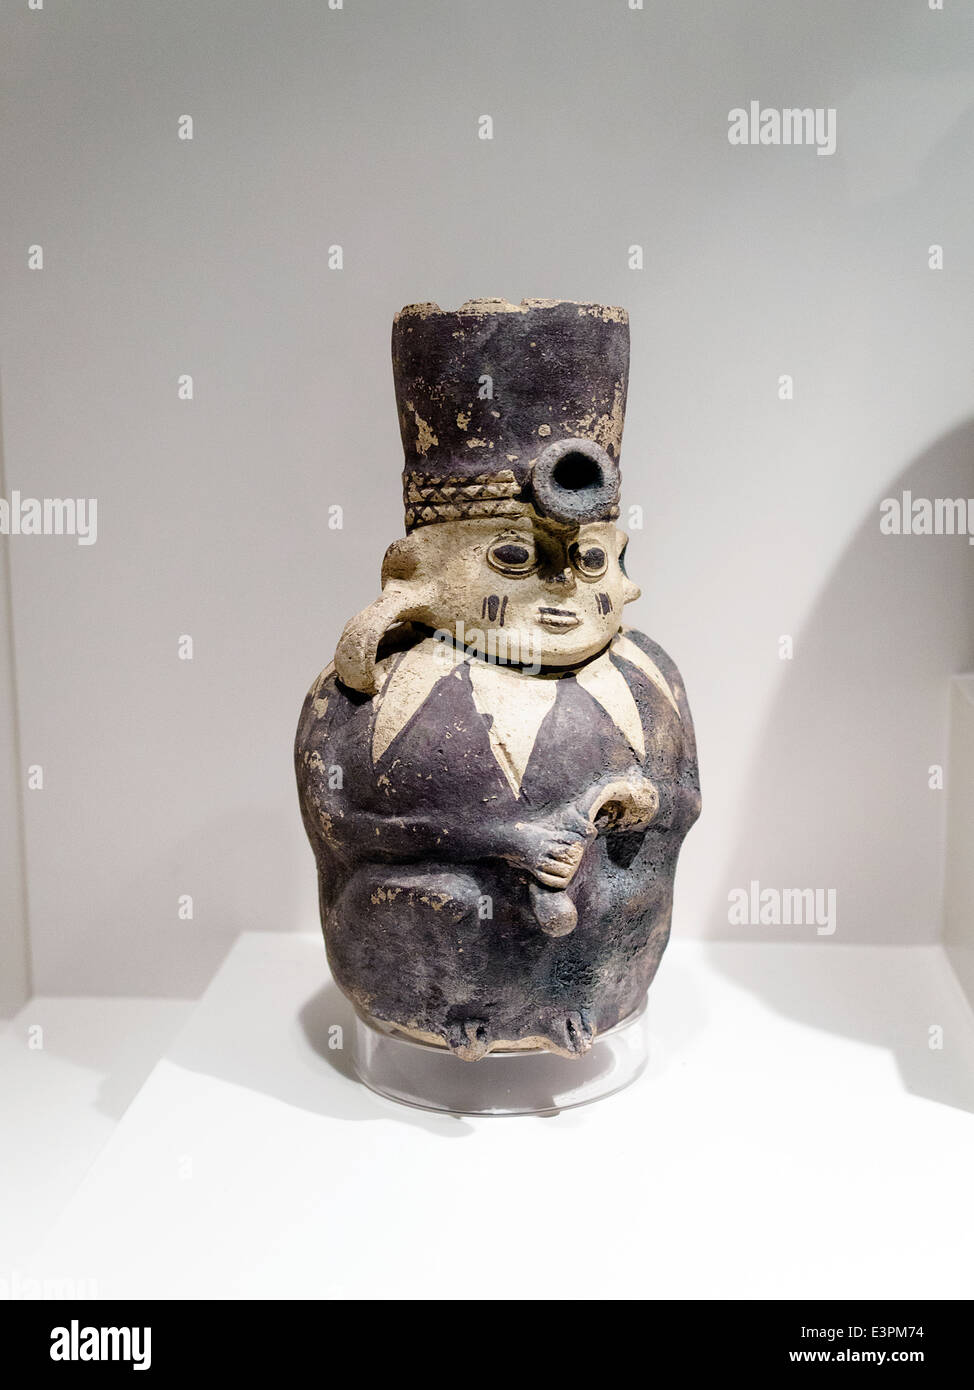 La période impériale Chancay figurine 1300 AD - AD 1352 Museo de Arte Precolombino, Cusco - Pérou la représentation en céramique d'êtres humains. Il s'agit d'une figurine de plus ou moins réaliste, style très créativement conçu et rendus avec une suggestion de primitivisme. C'est ce 'non'-qualité sculpturale et capacité qui rend cet exemple si attrayant. Les modèles du céramiste chaque pièce se prévaloir d'éléments décoratifs rudimentaire. Dans l'attention principalement par le raccourcie de façon marquée et très faible des extrémités, le visage légèrement esquissé et parfois unfin Banque D'Images